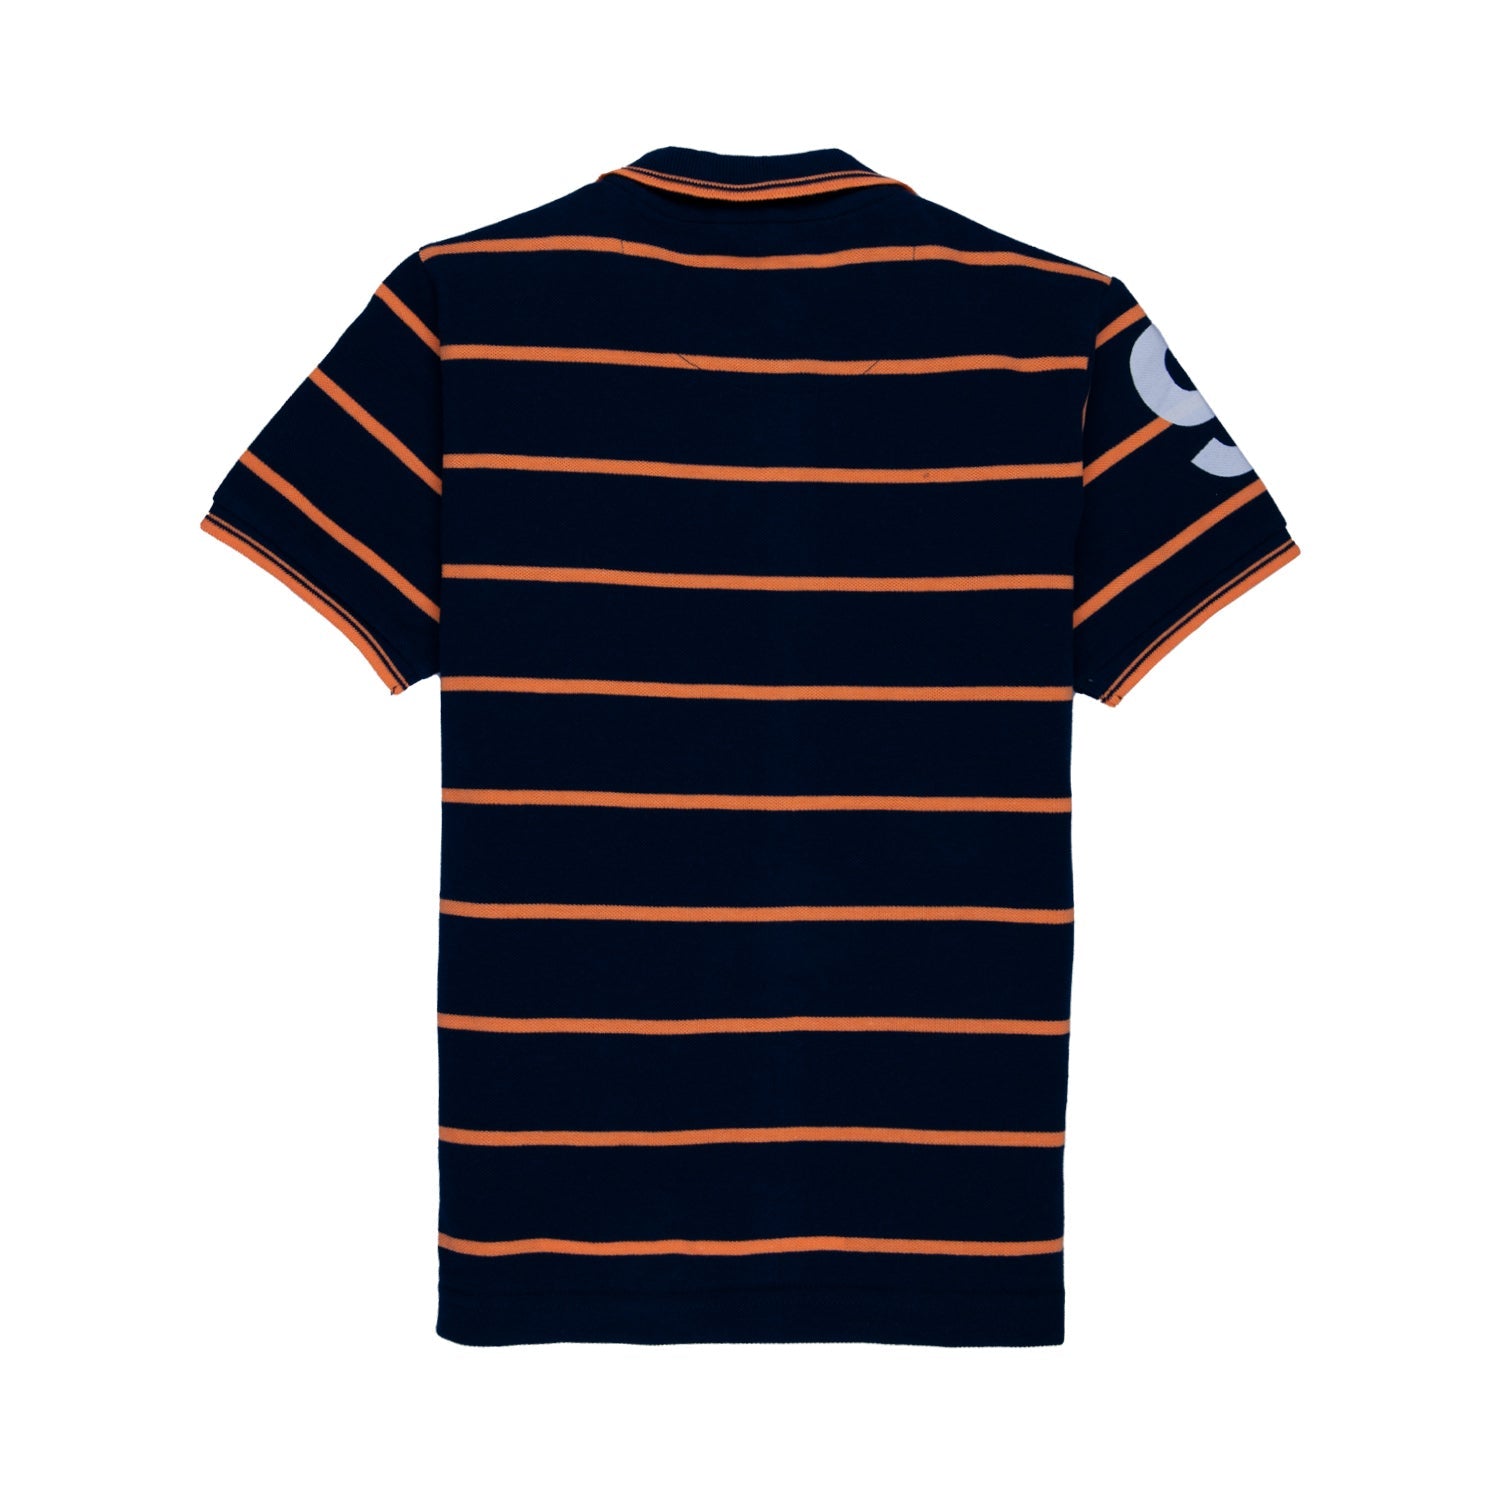 Kids Striped Polo T-shirt